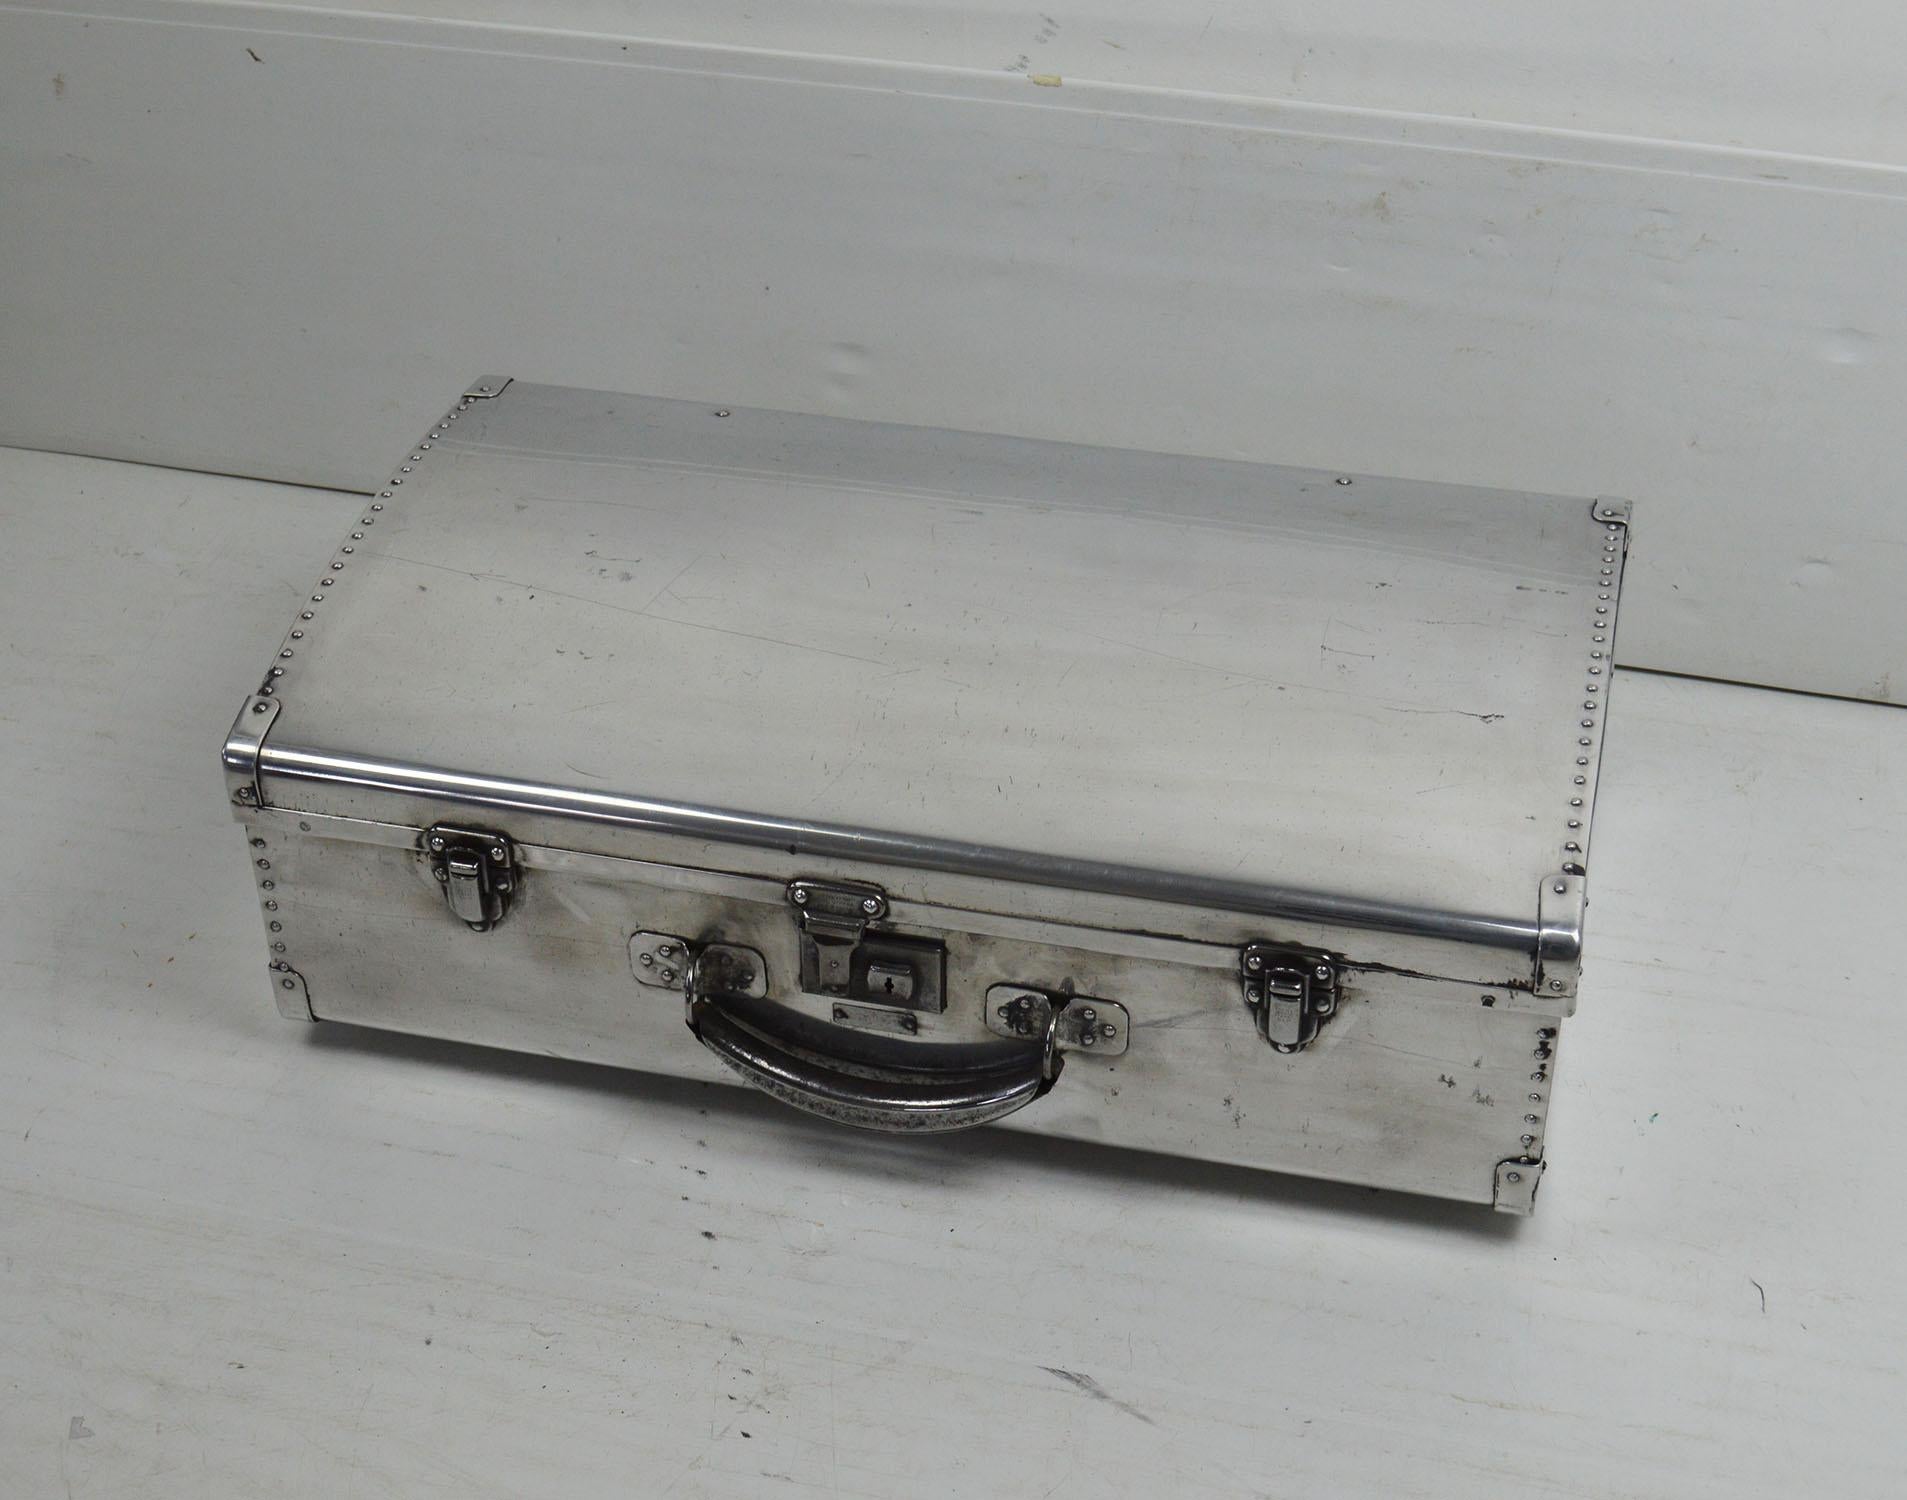 Aluminum Vintage Polished Aluminium Suitcase, English, 1940s